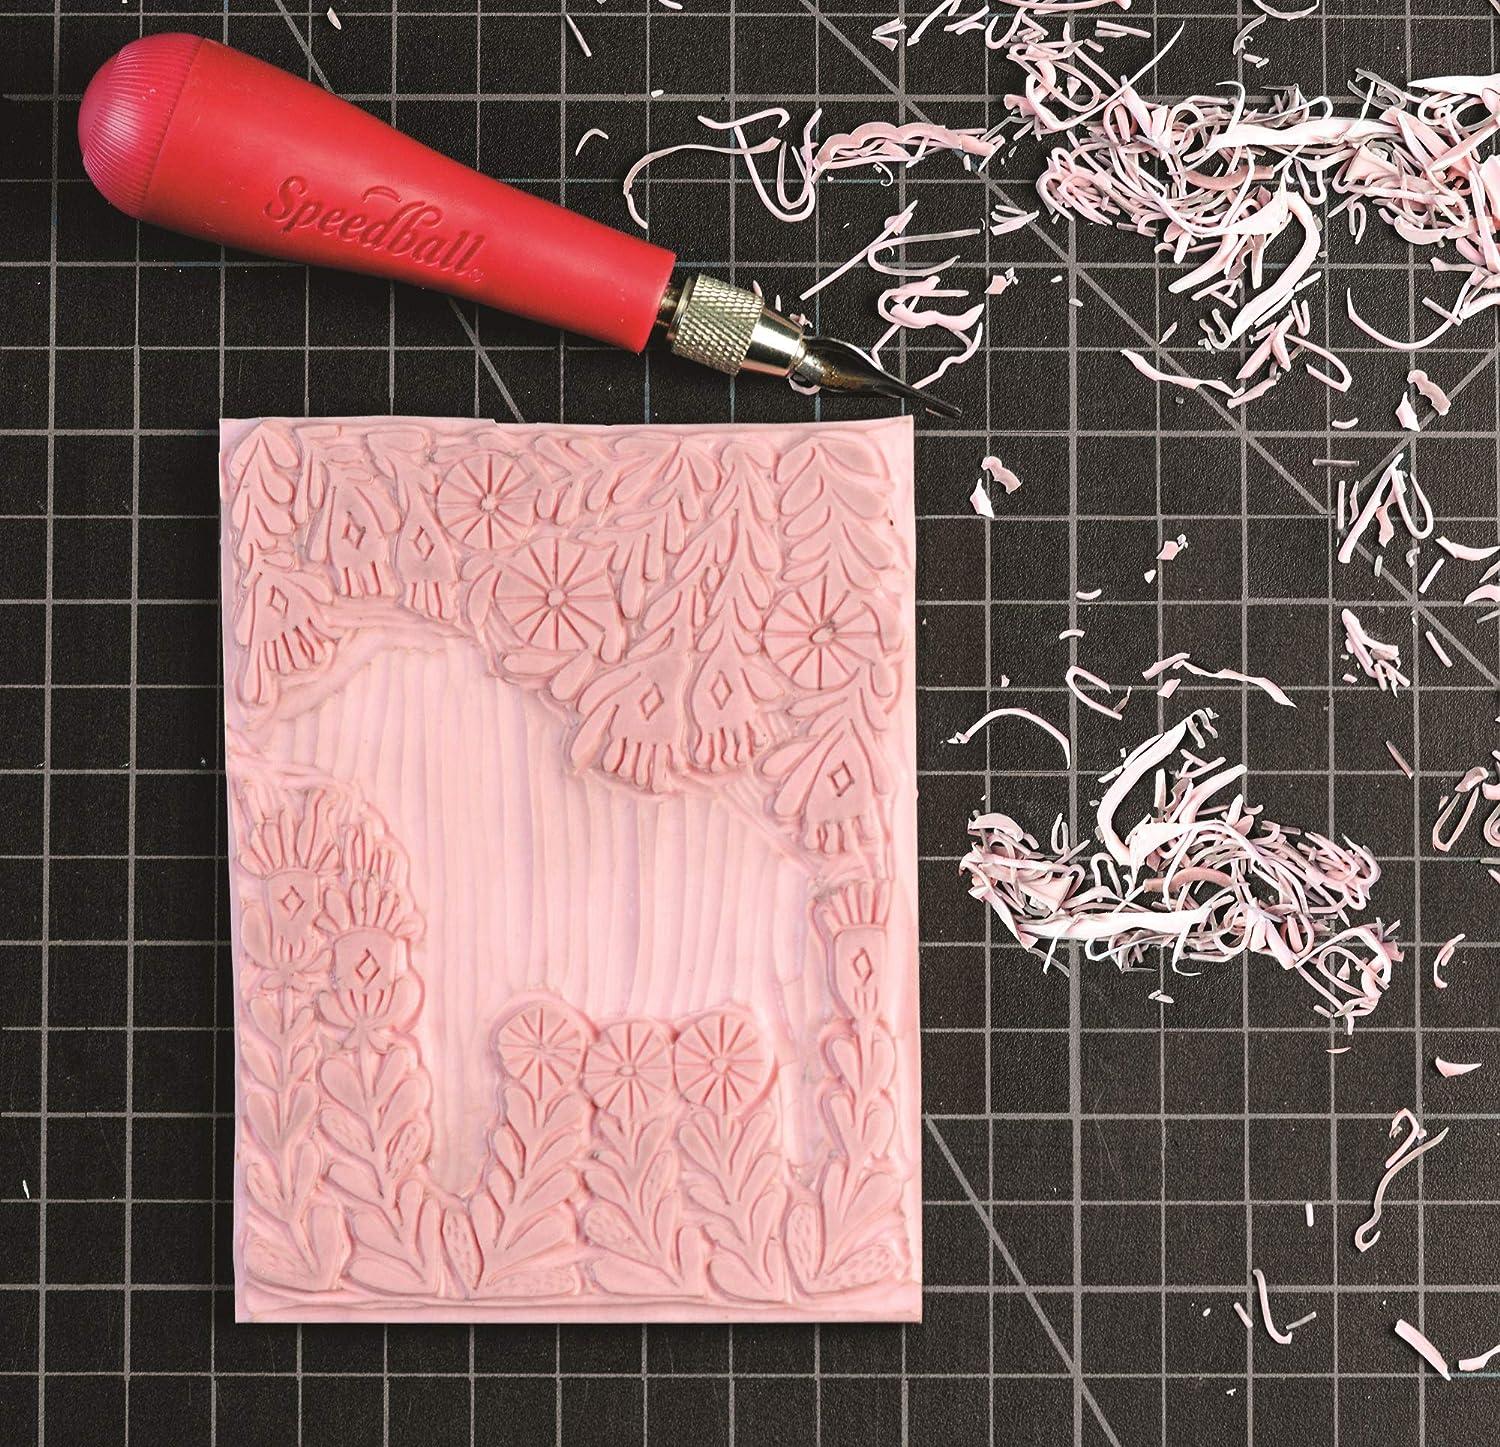 Speedball Linoleum Cutter Kit Assortment #1 - Linocut Carving